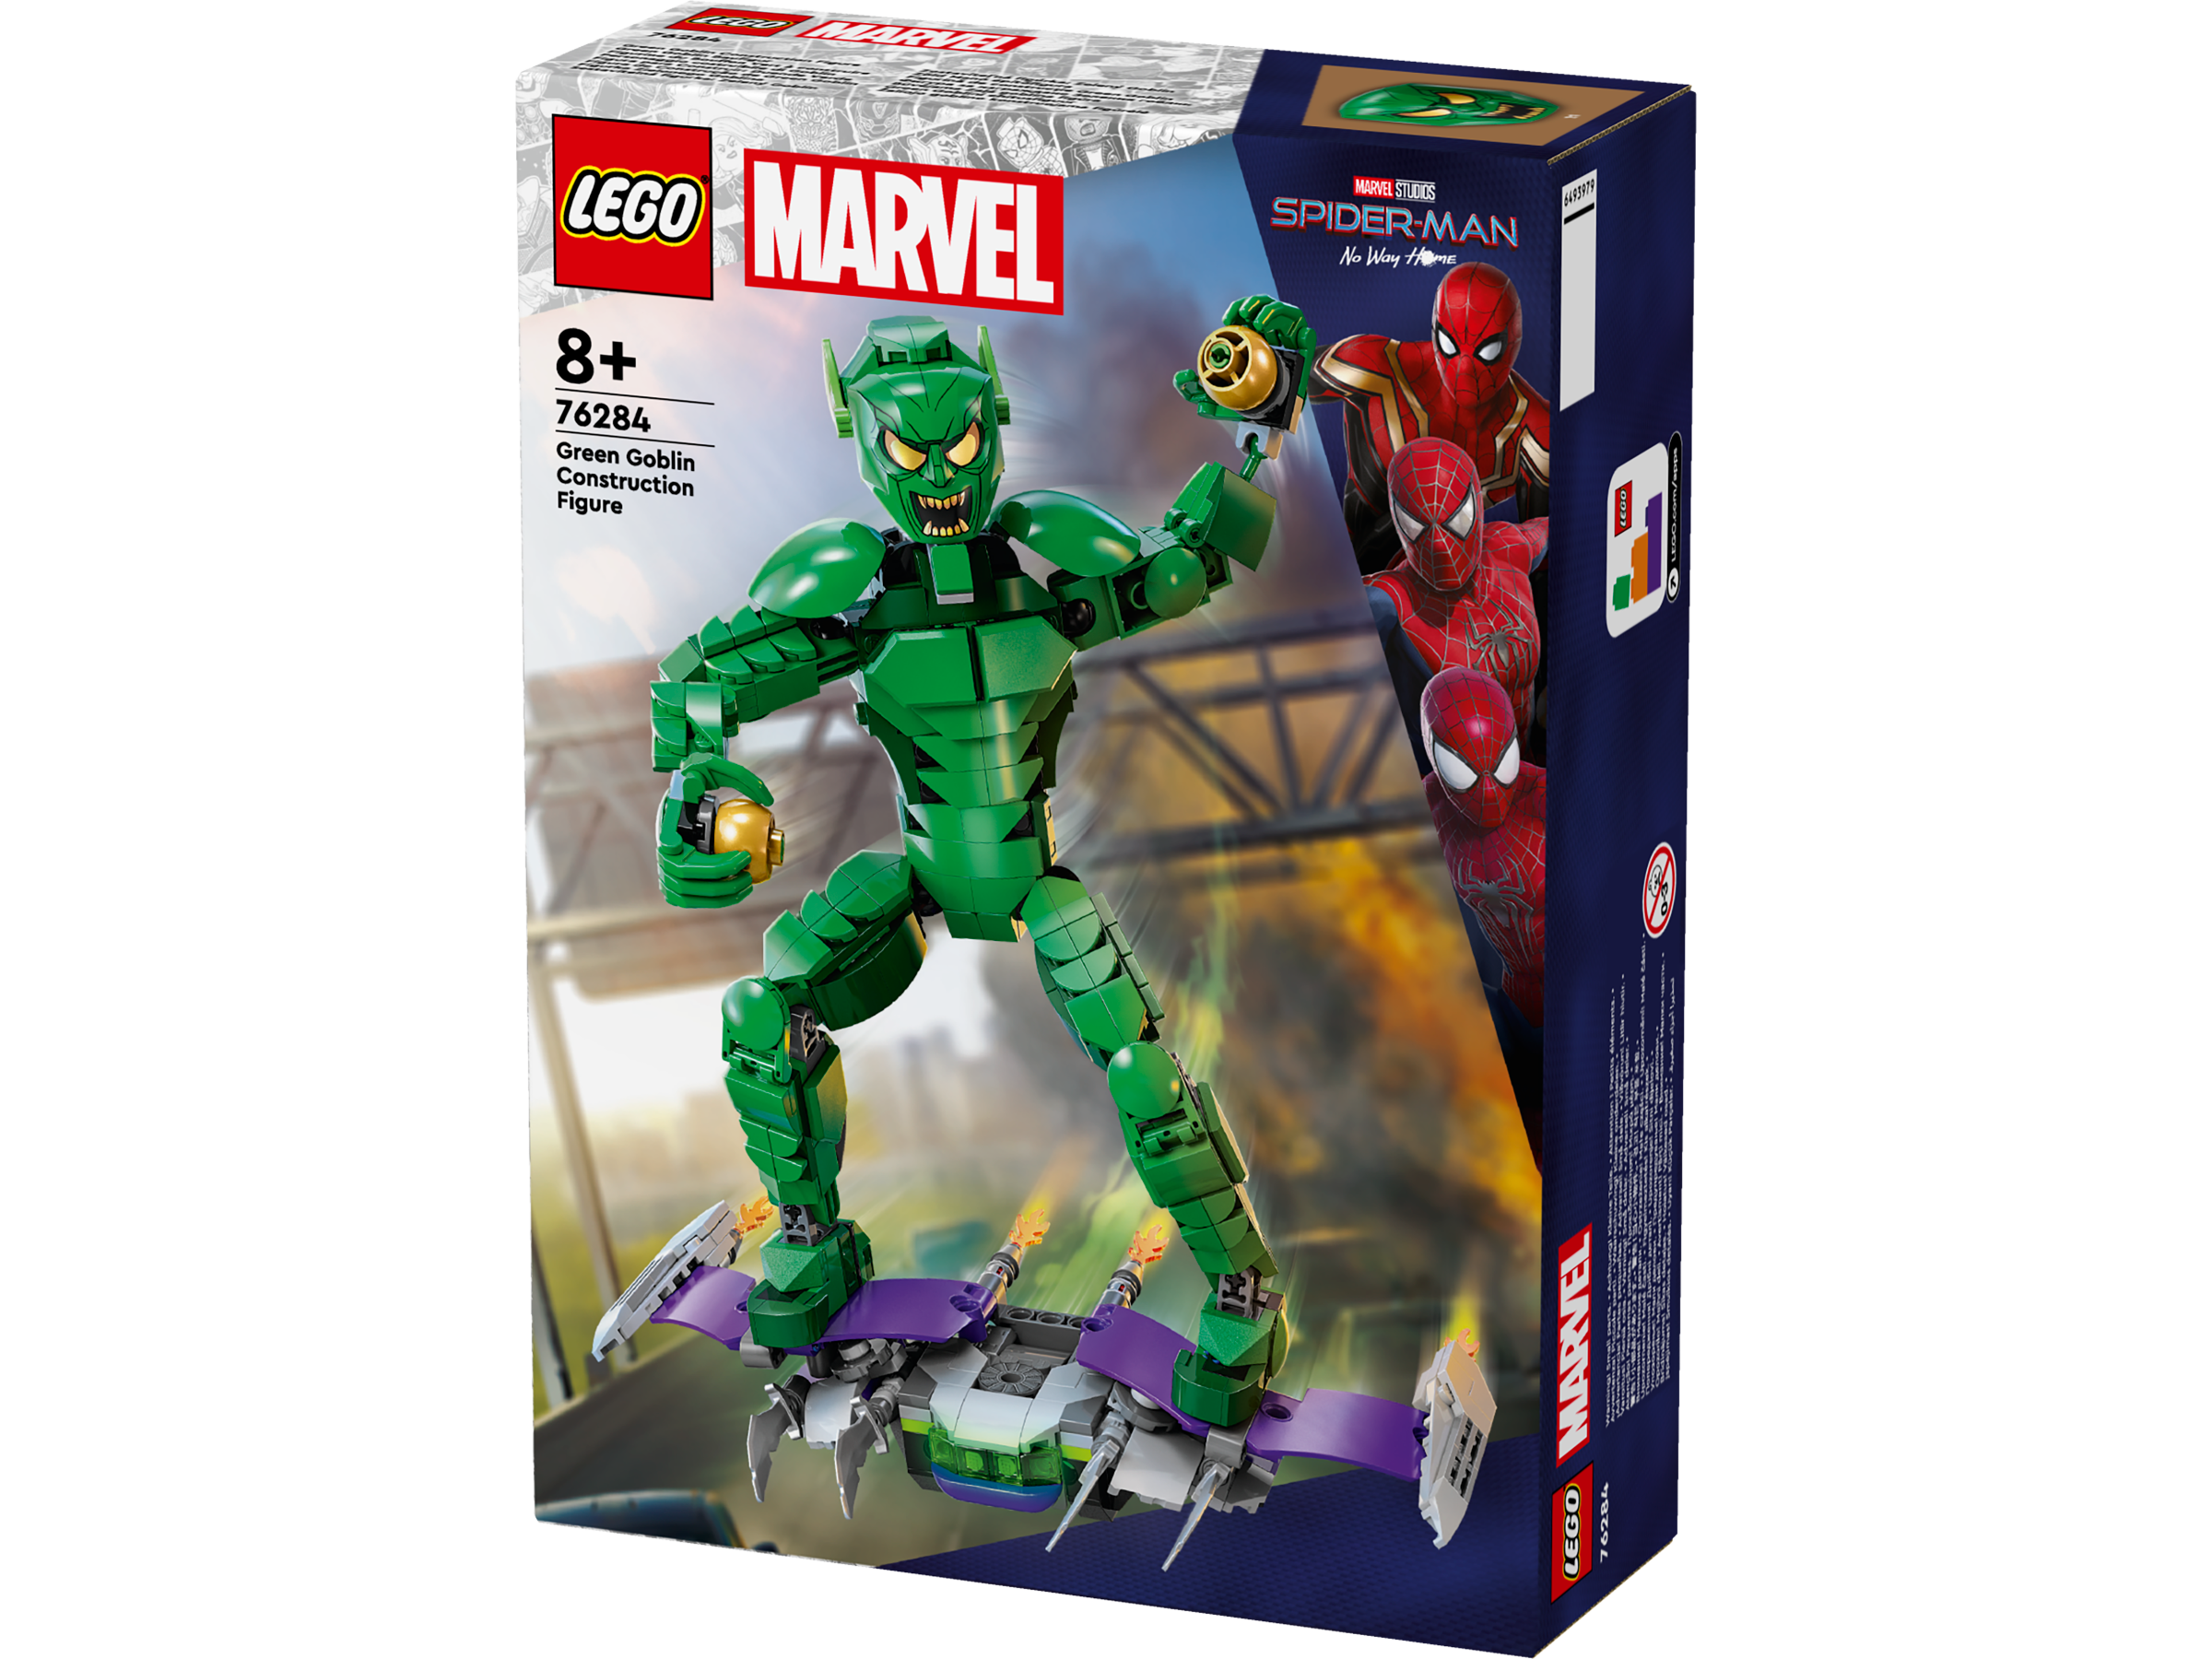 Lego 76284 Green Goblin Construction Figure